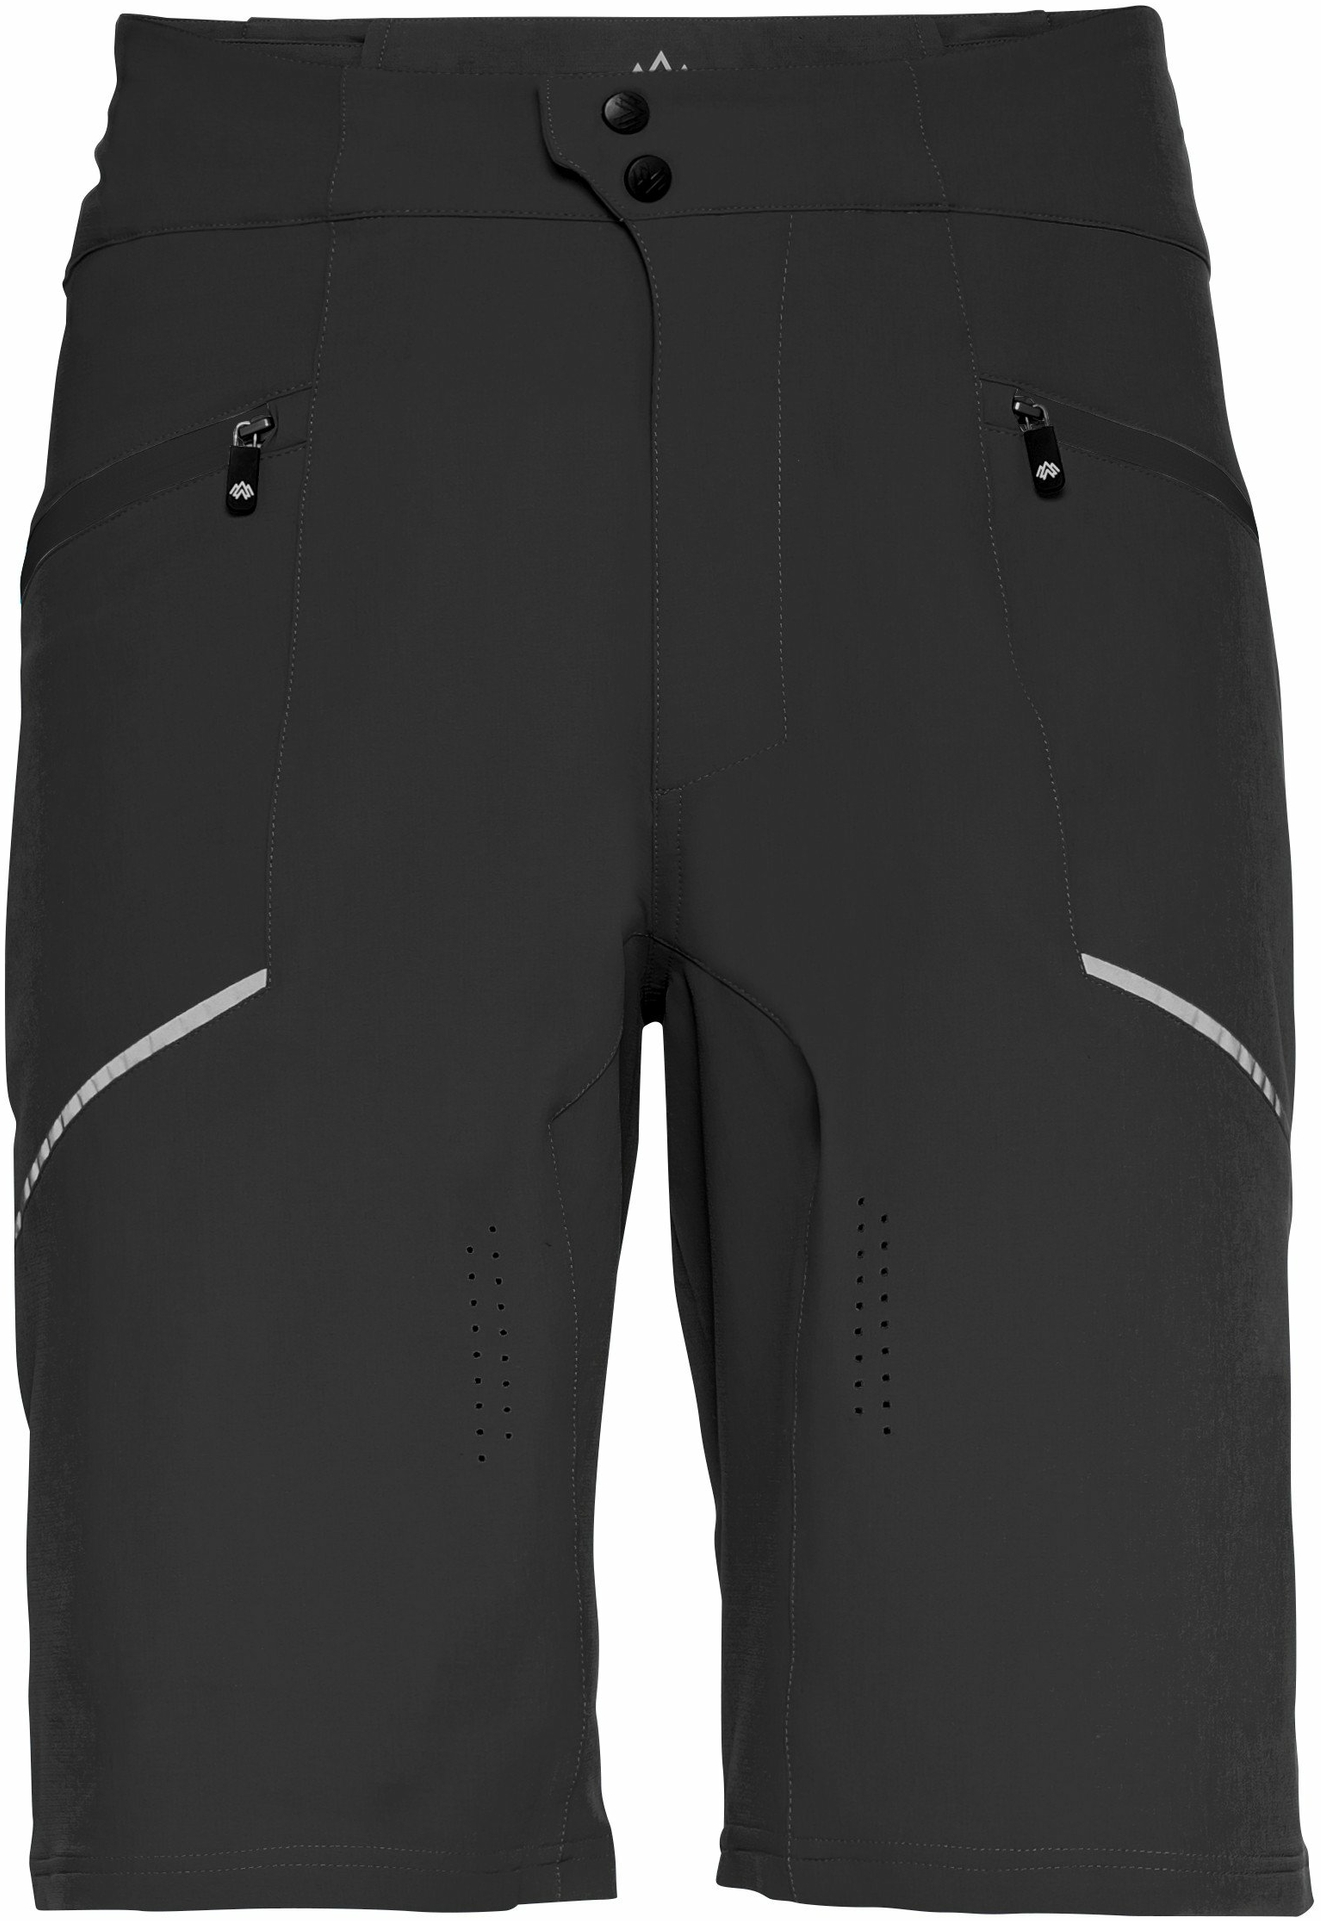 Apura Herren Shorts MTB Shorts Pure